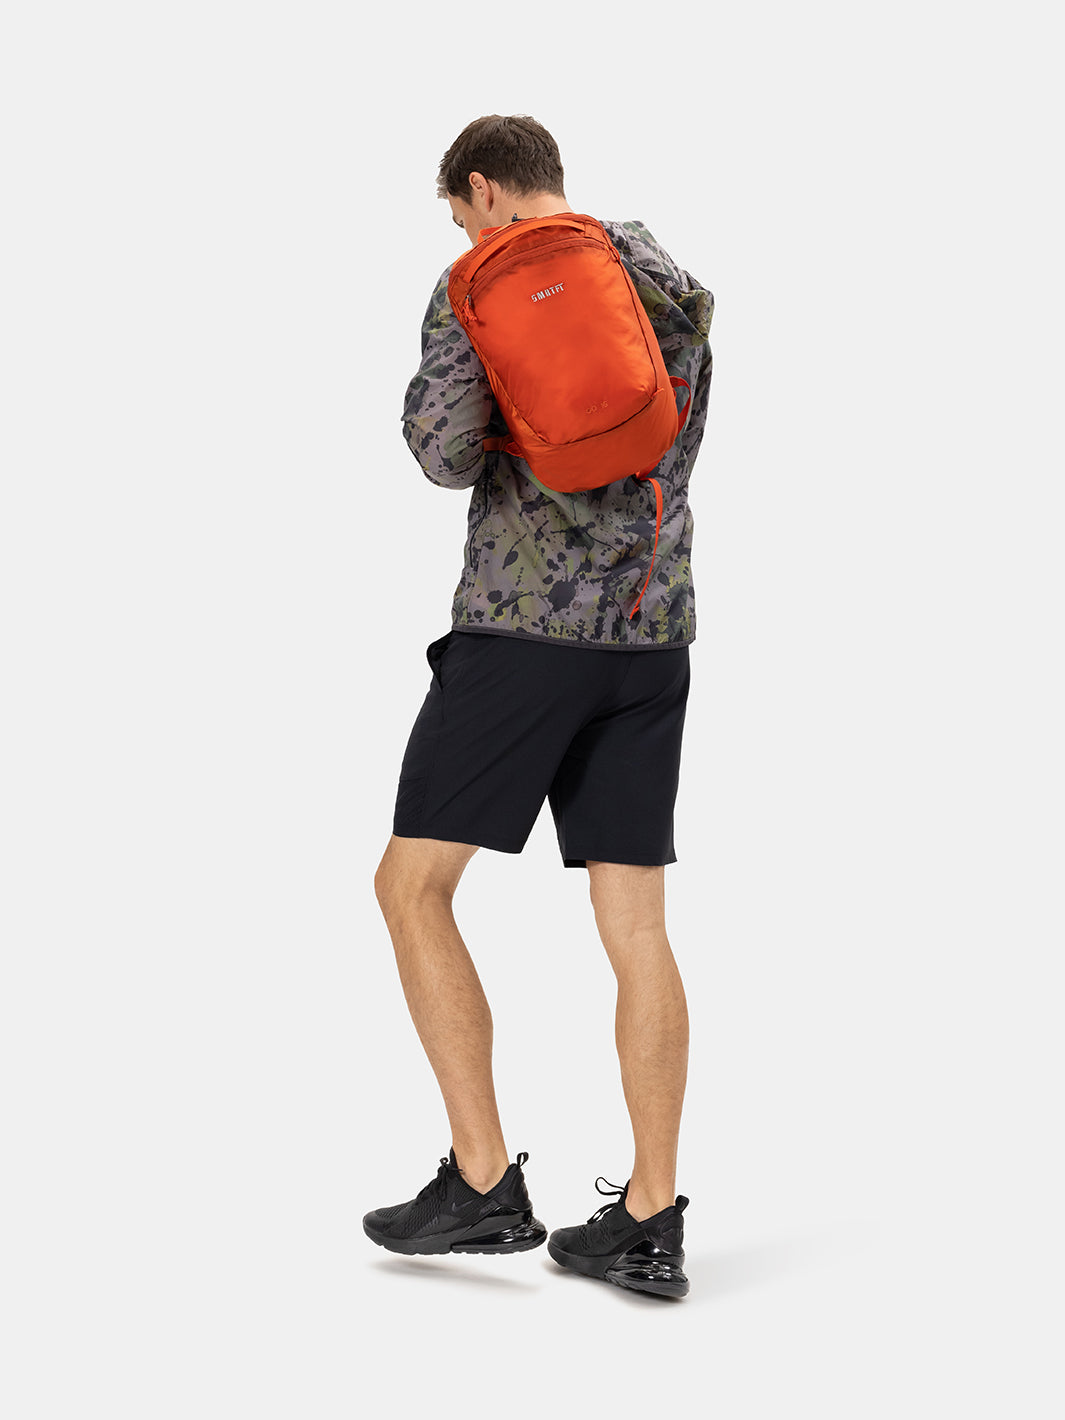 Orange Backpack For Men | Men's Bacpacks | Orange SMRTFT Backpack